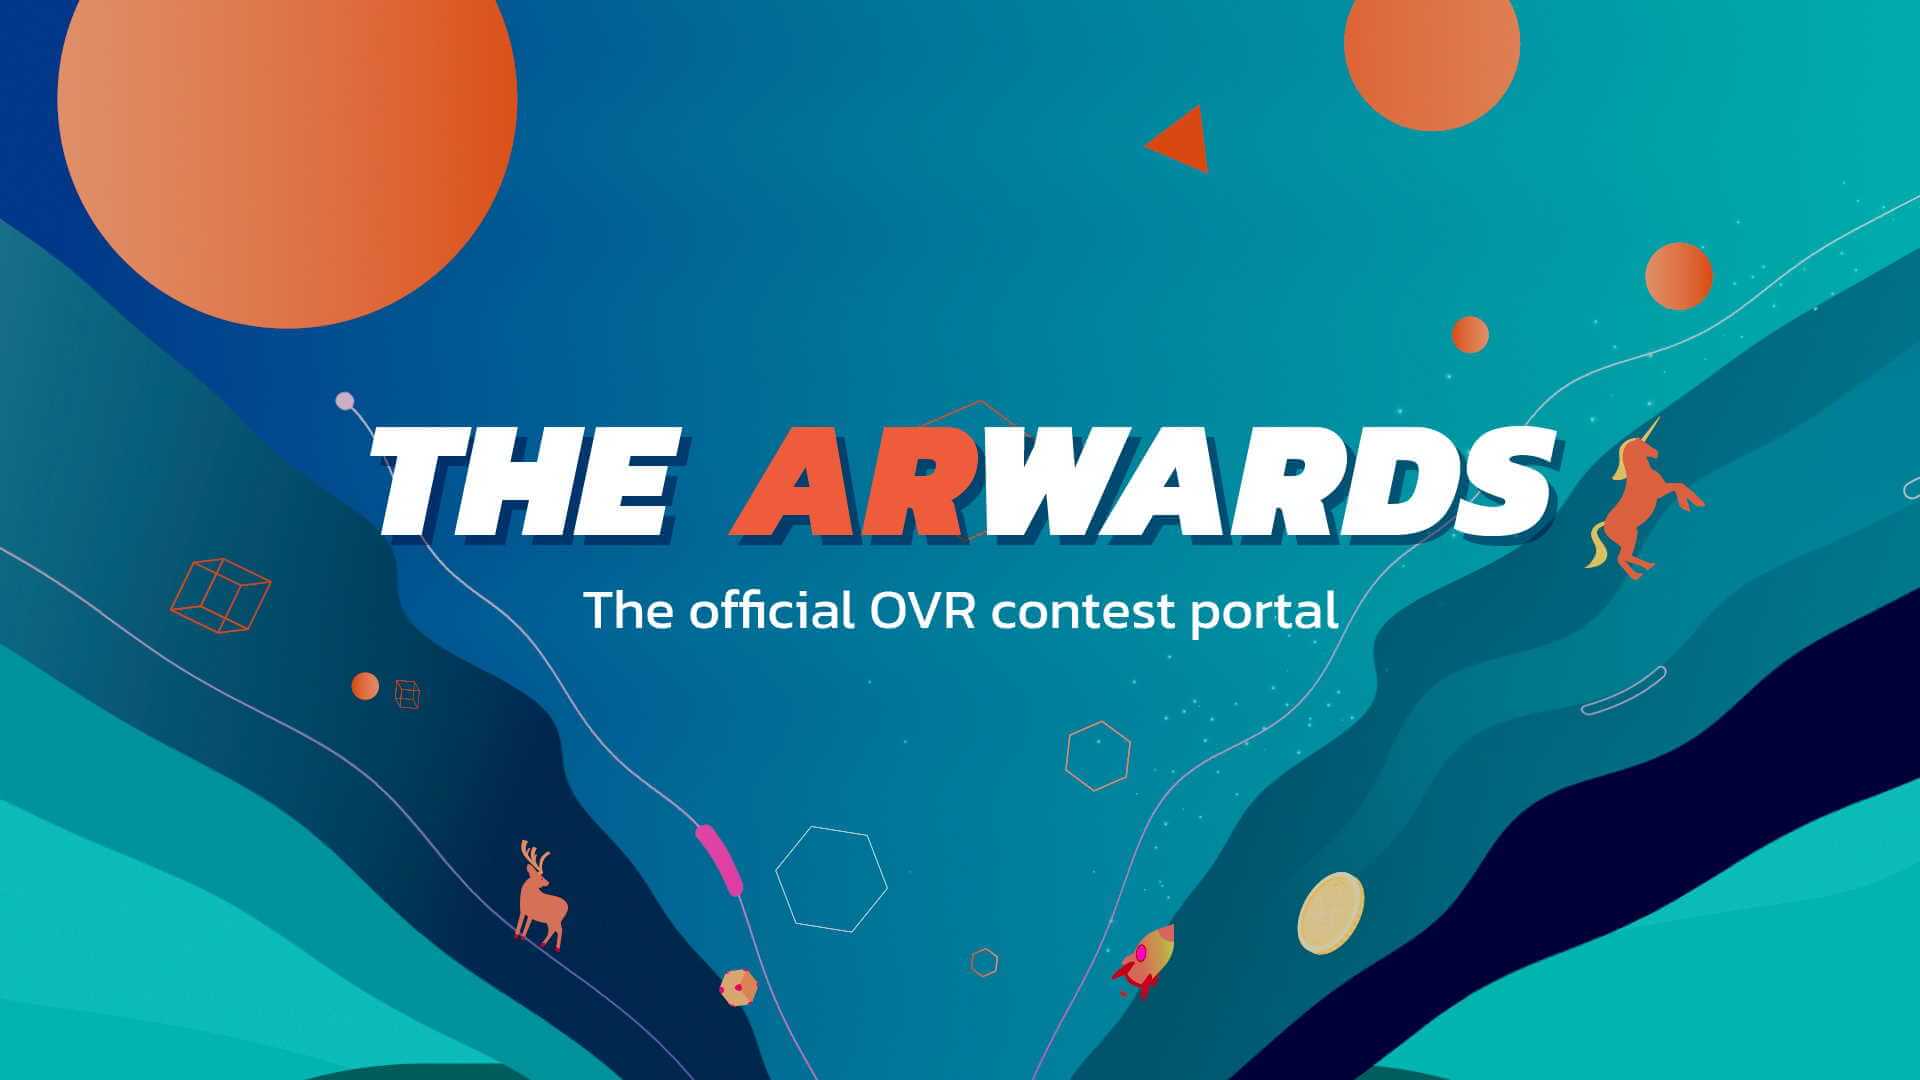 ARwards: Cuộc thi OVR chính thức dành cho người sáng tạo nội dung